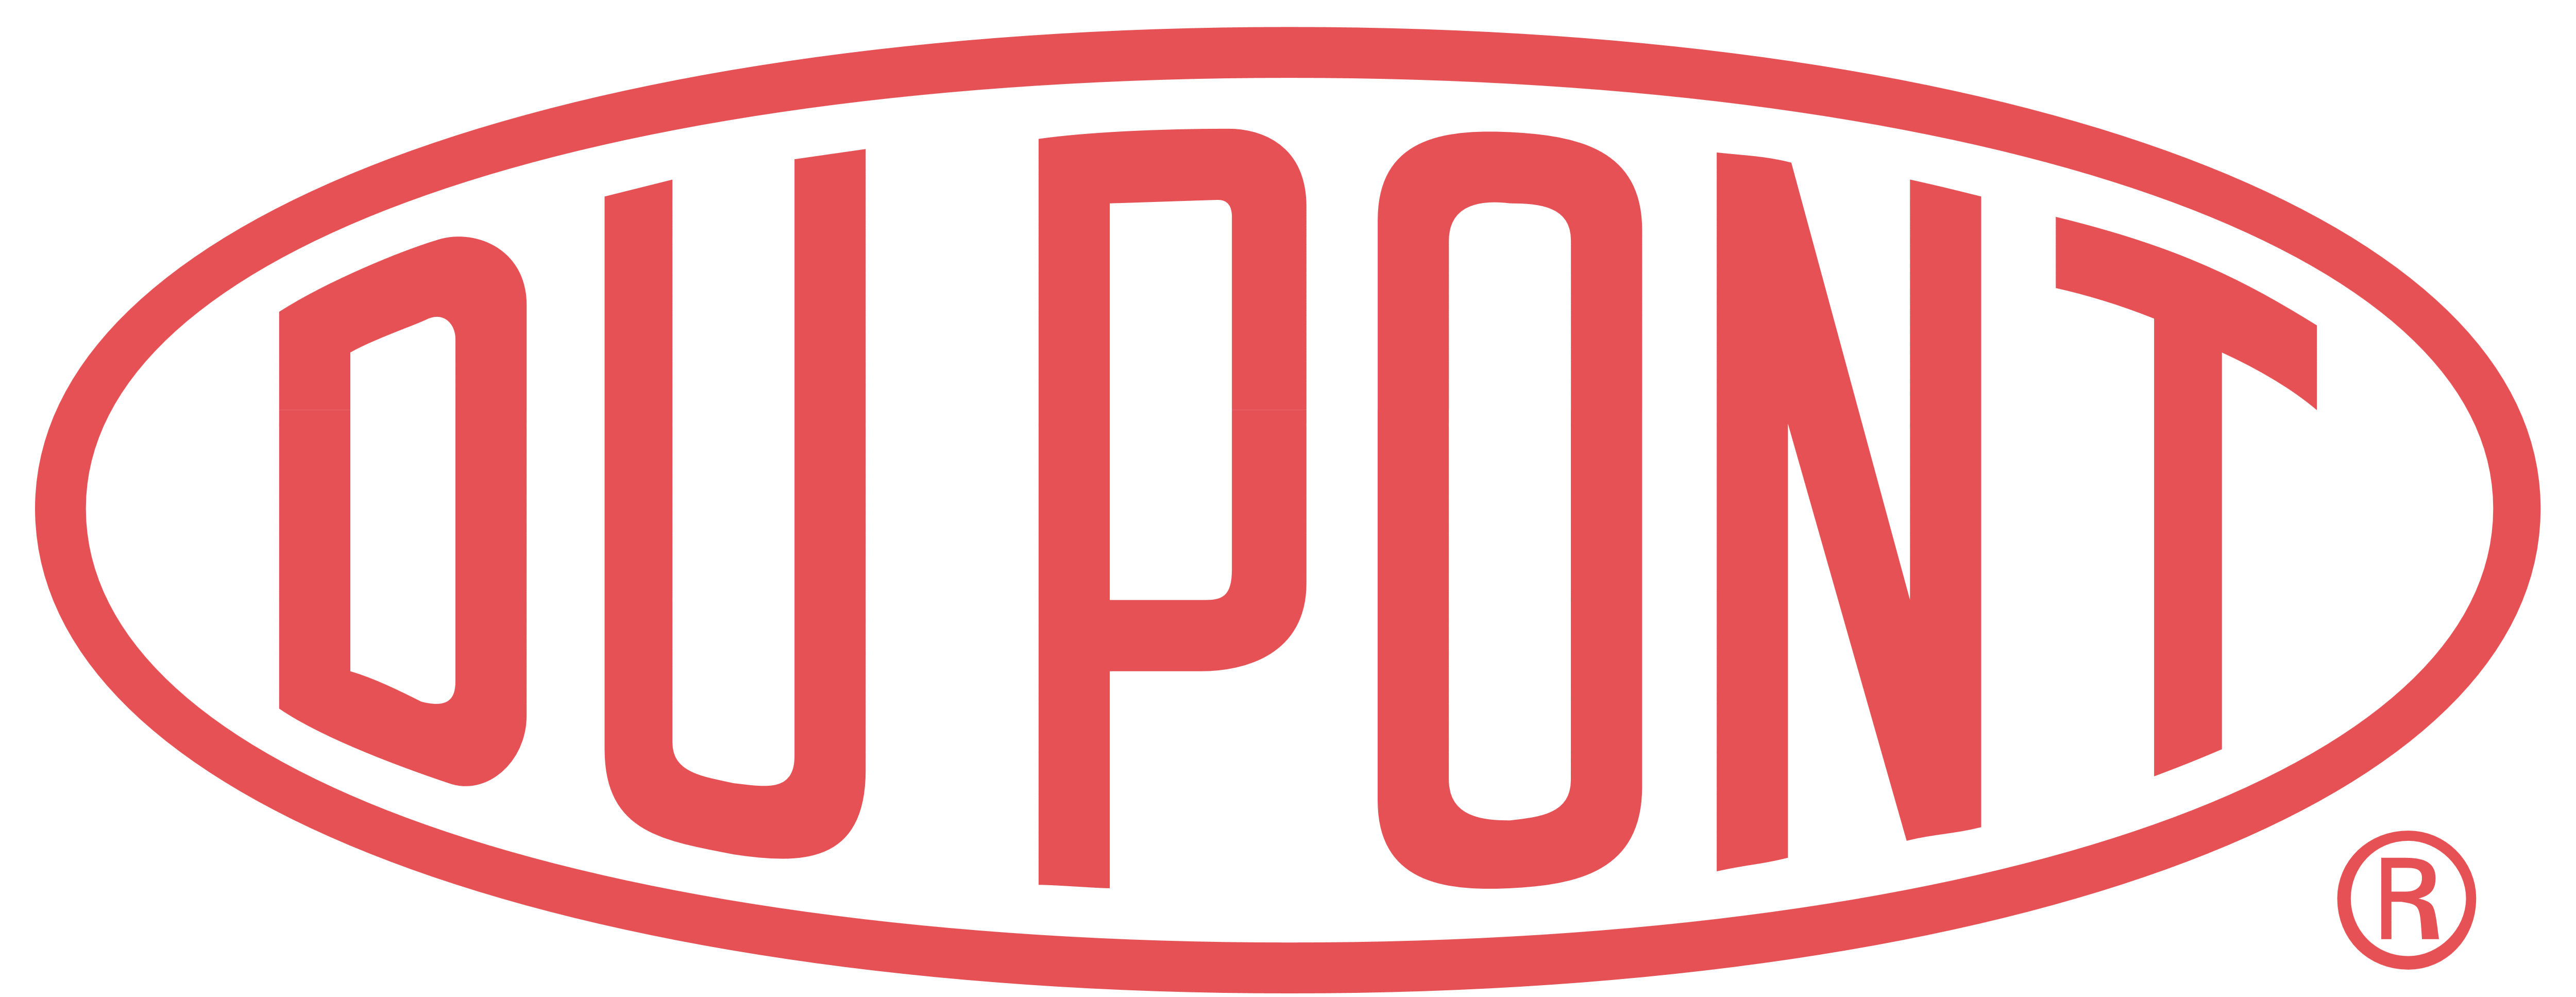 DuPont_logo.png